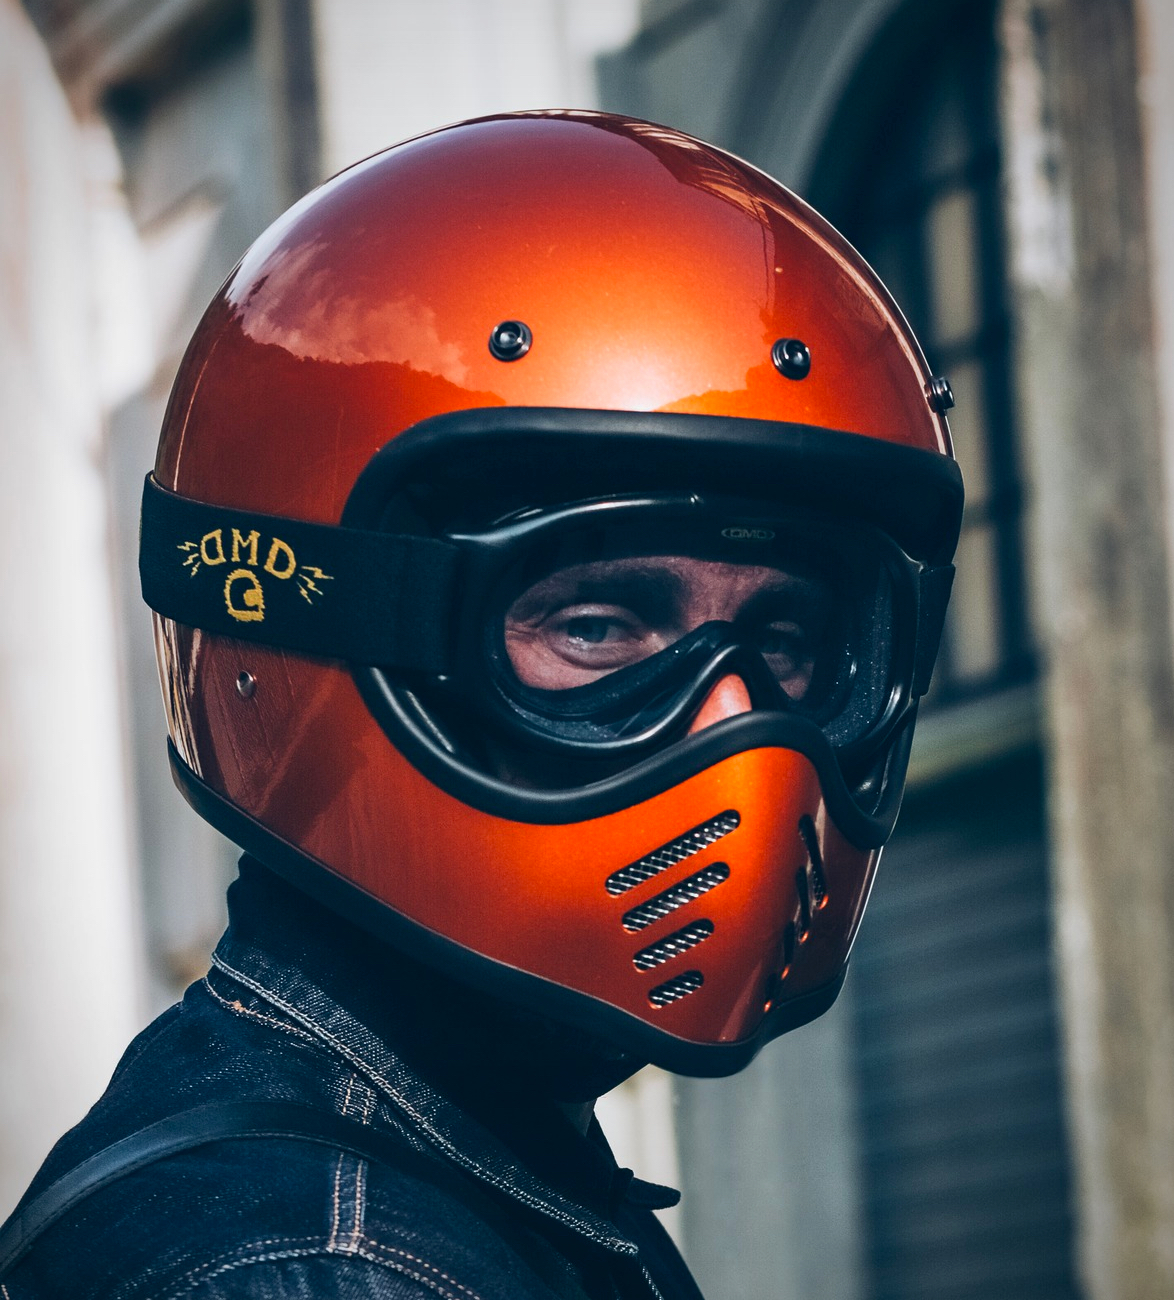 dmd-vintage-motorcycle-helmets-4.jpg | Image